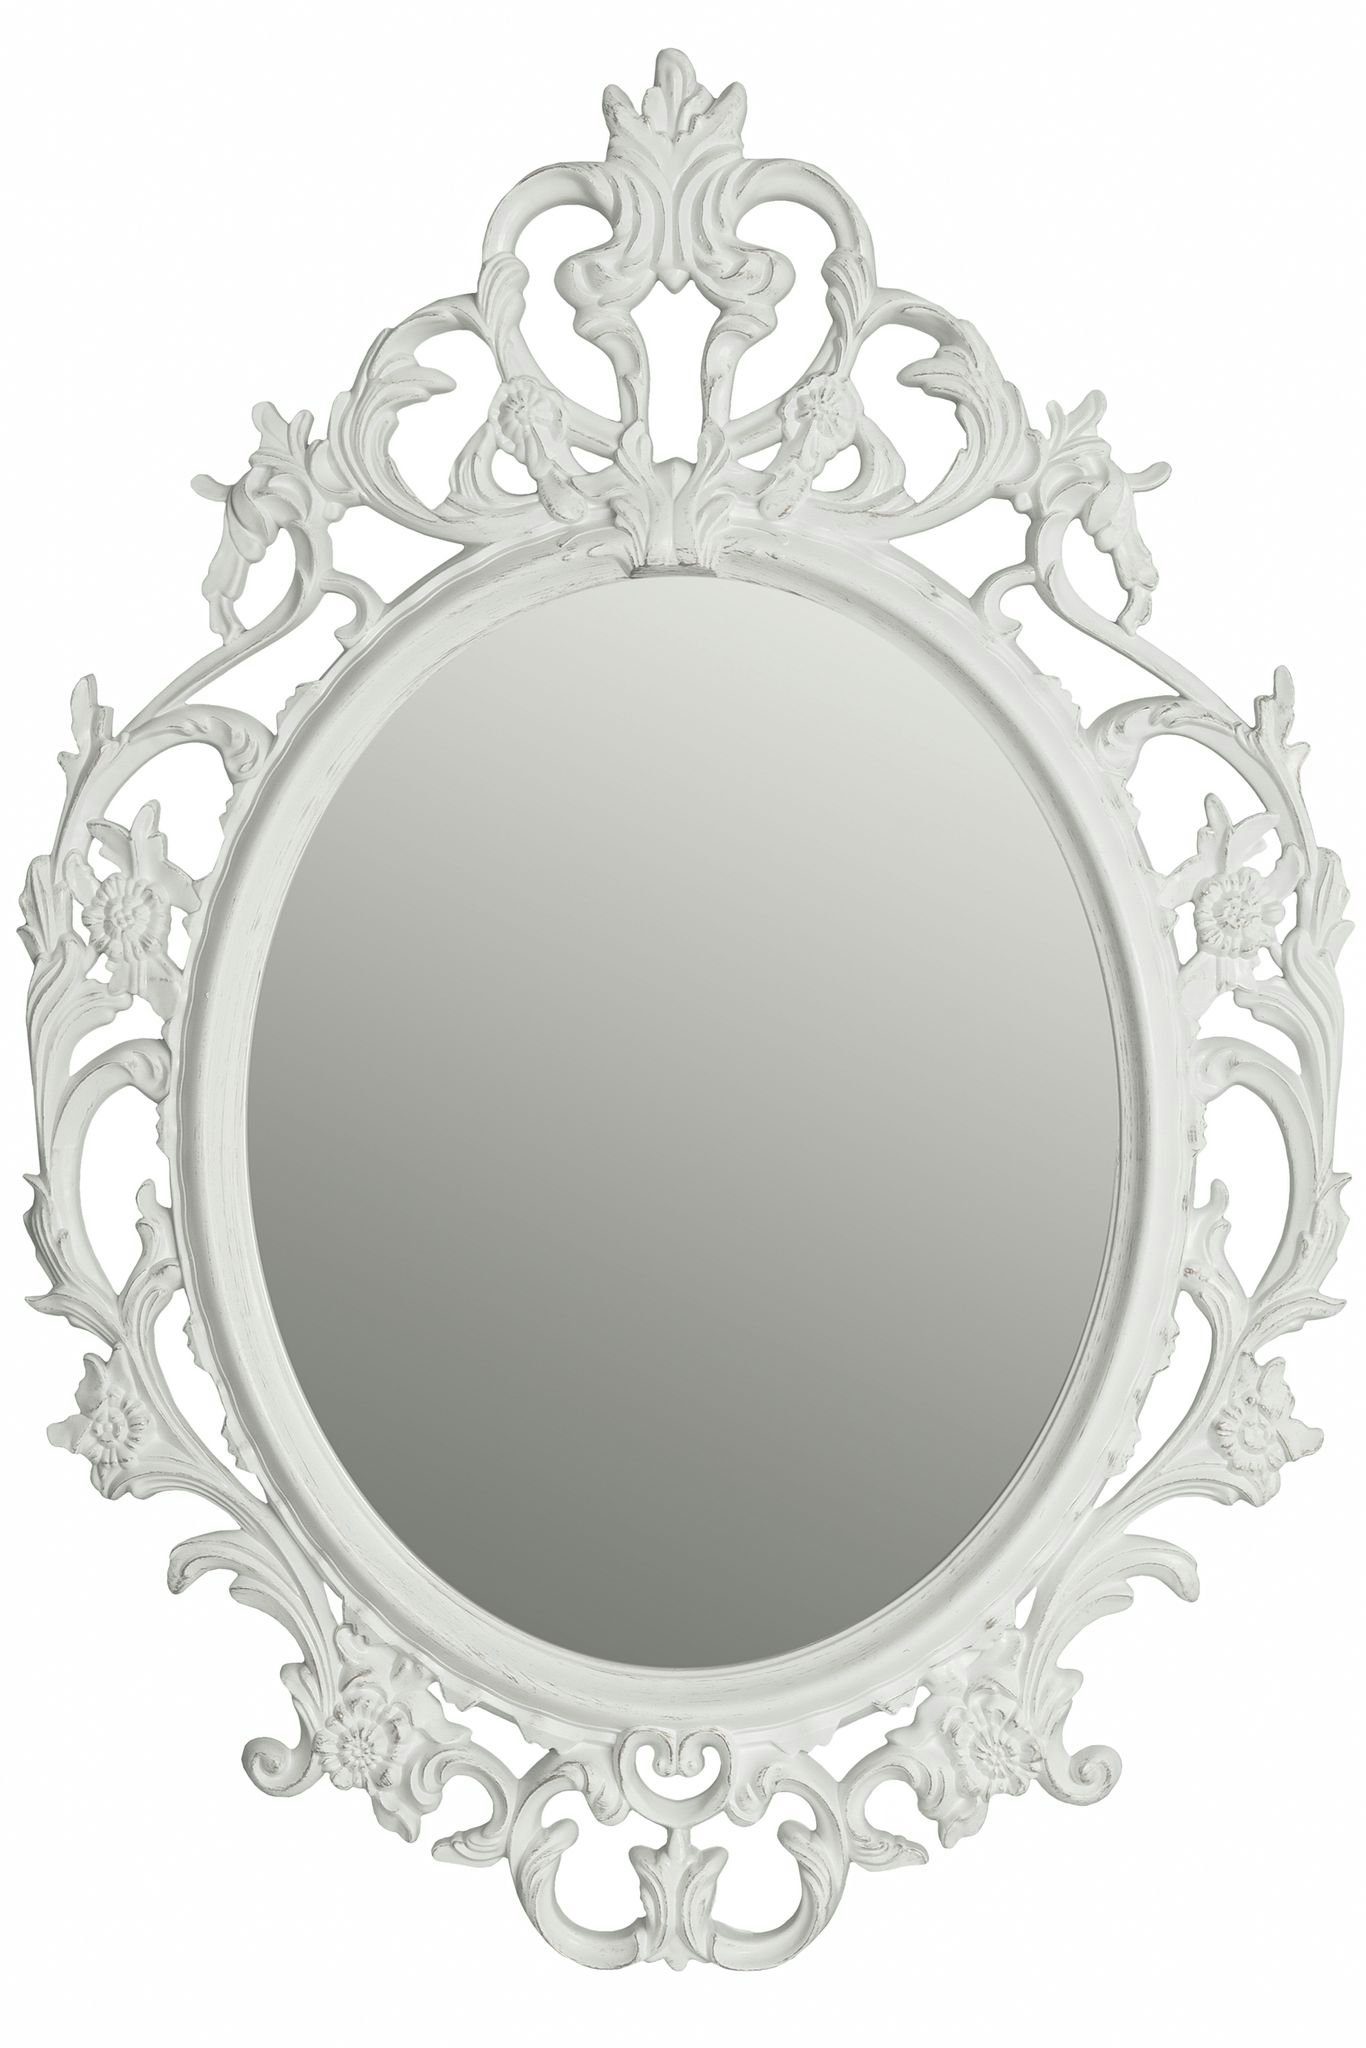 elbmöbel Wandspiegel Spiegel Oval Barock weiß Barockspiegel, Spiegel barock  weiß Wandspiegel oval Barockspiegel Badspiegel